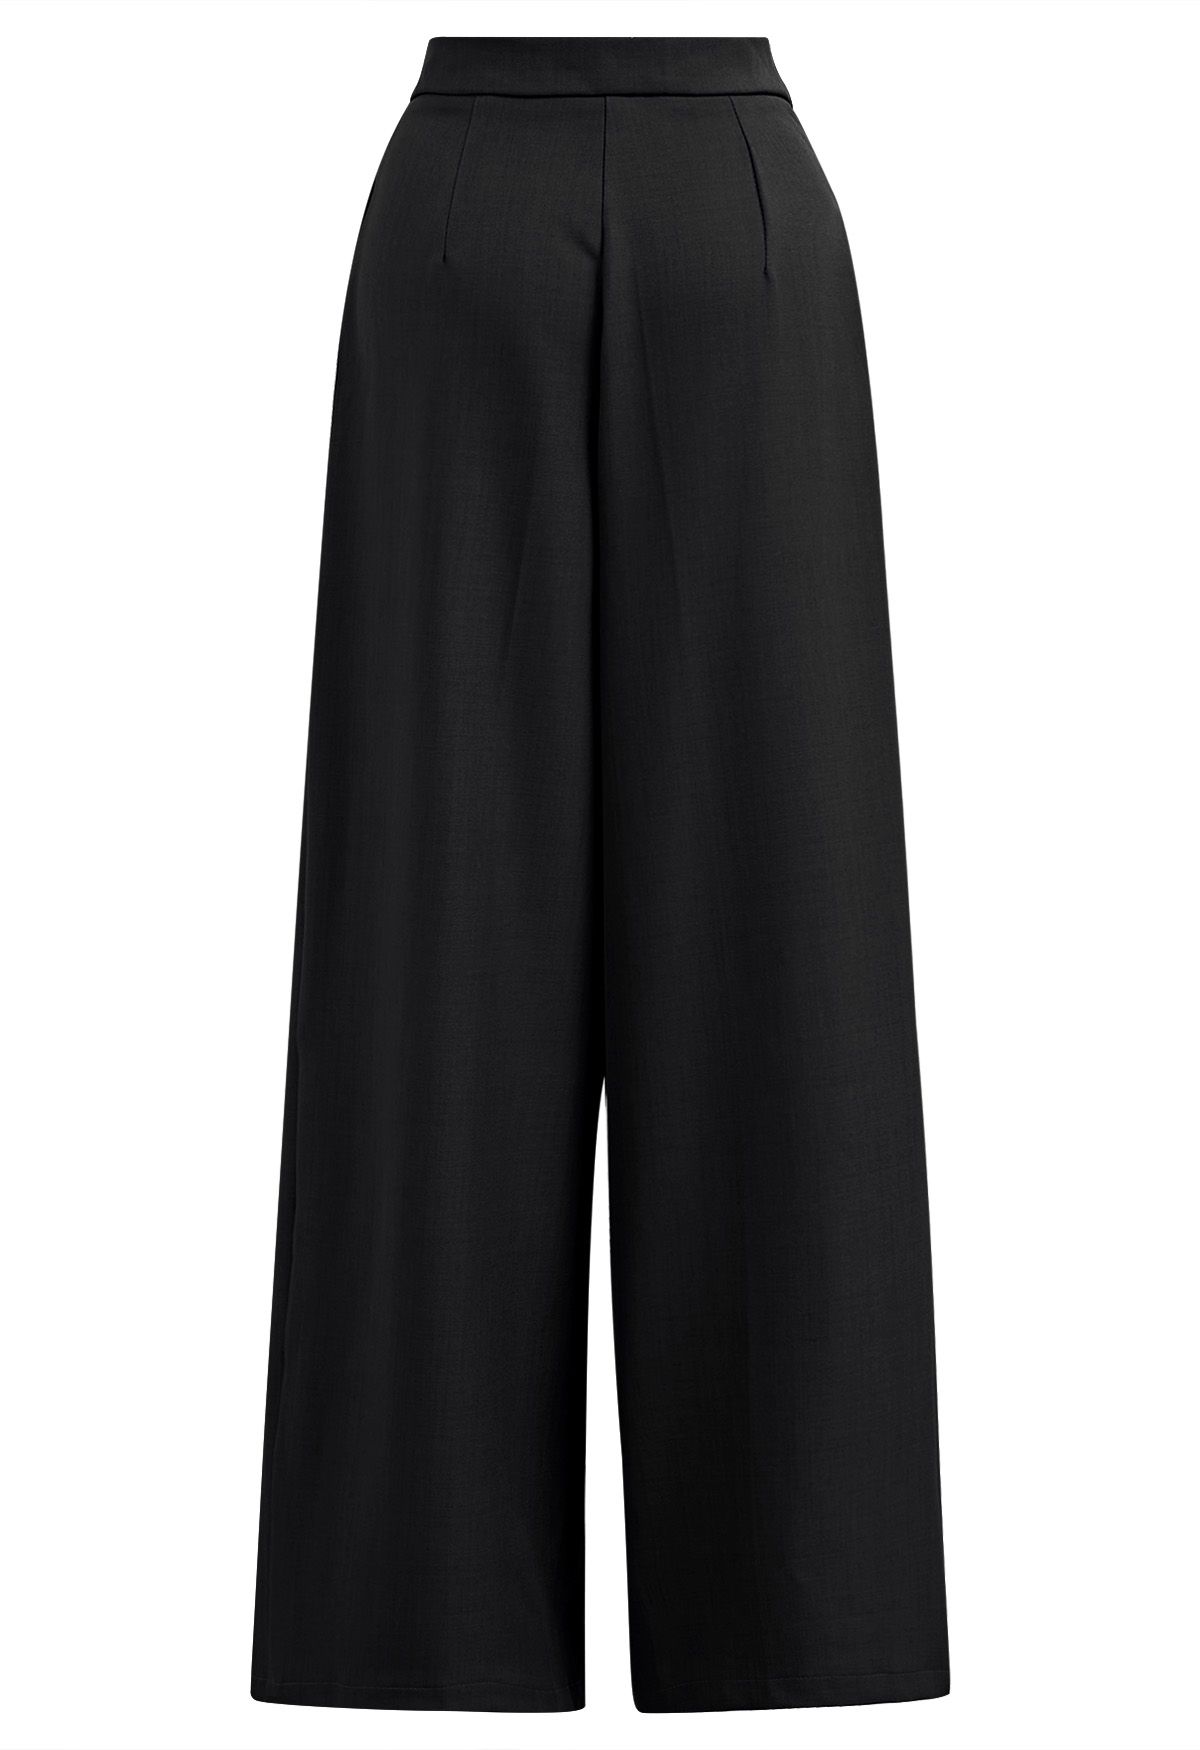 Pantalon droit avec poches latérales et ceinture fixe en noir